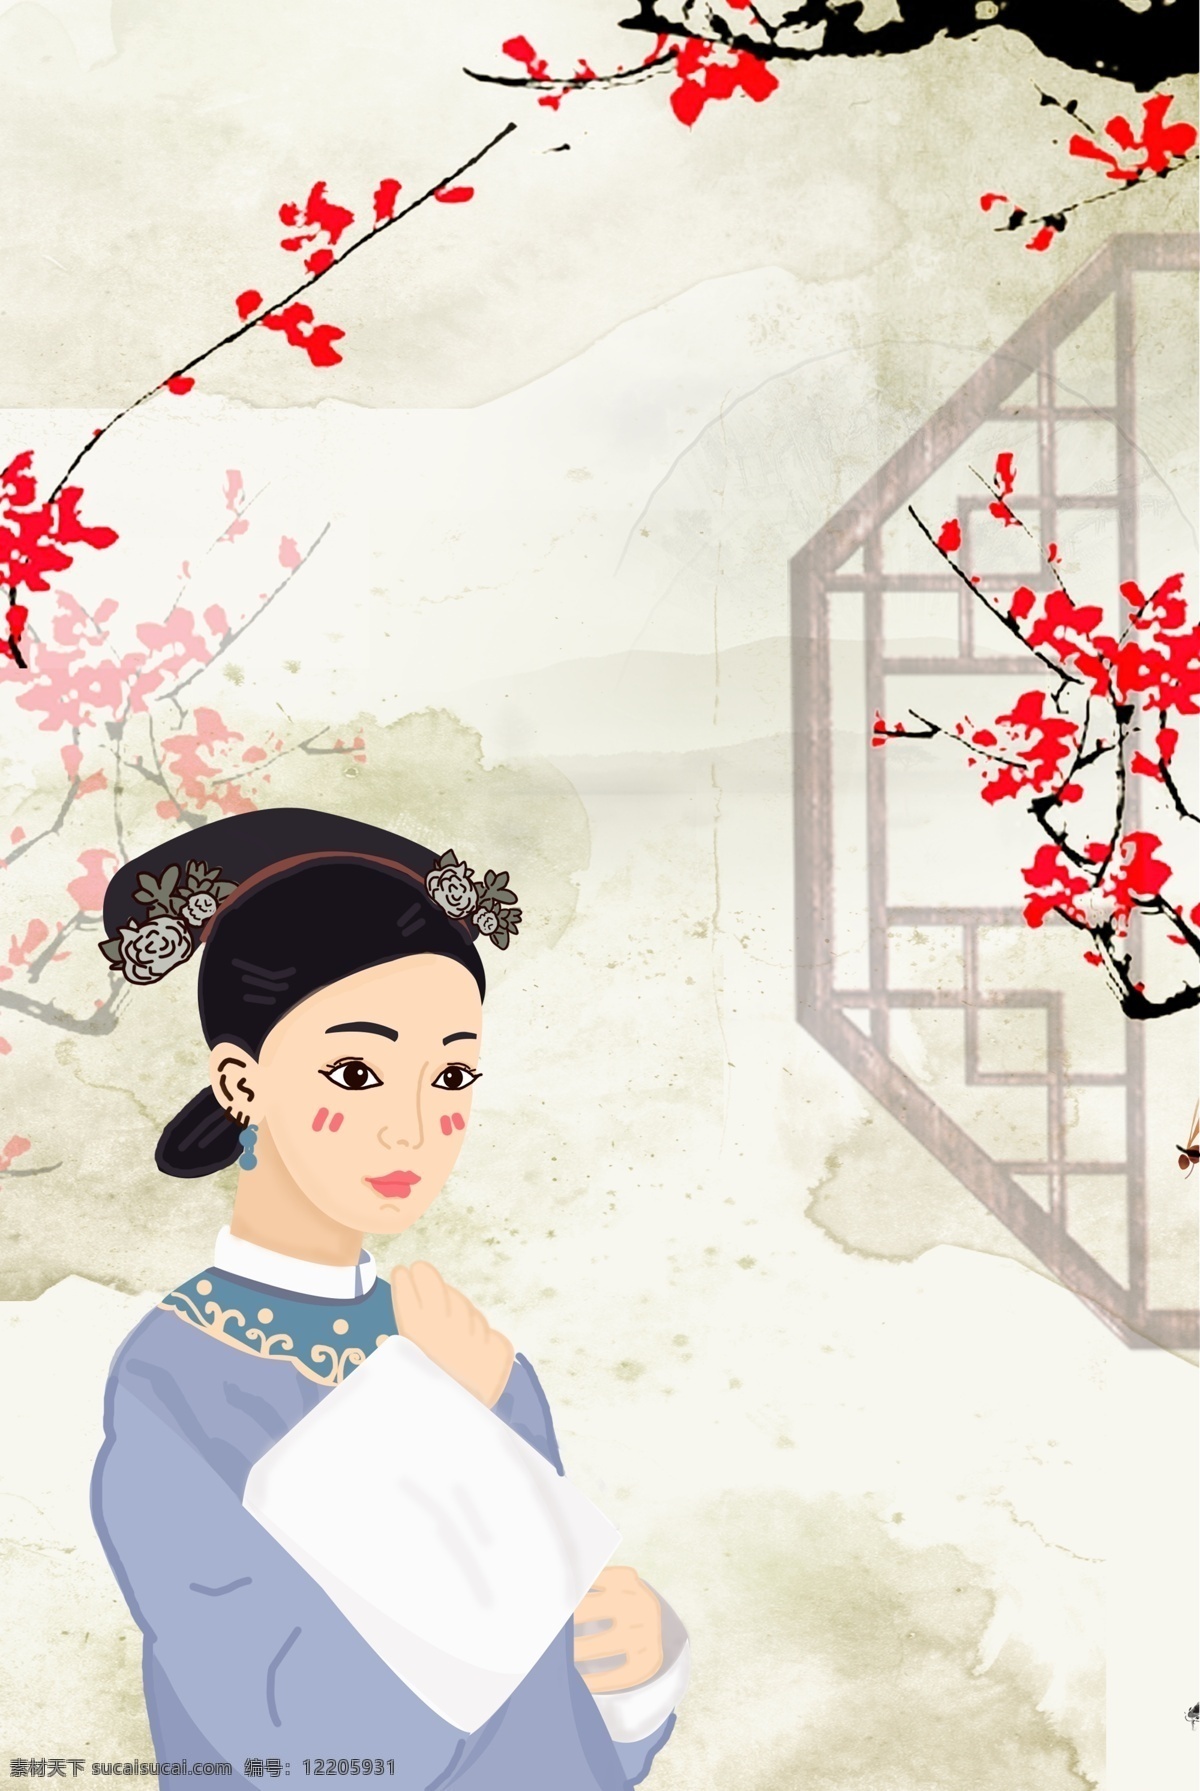 宫廷 清宫 中 国风 格格 卡通 海报 中国风 文艺 清新 古式花窗 梅花